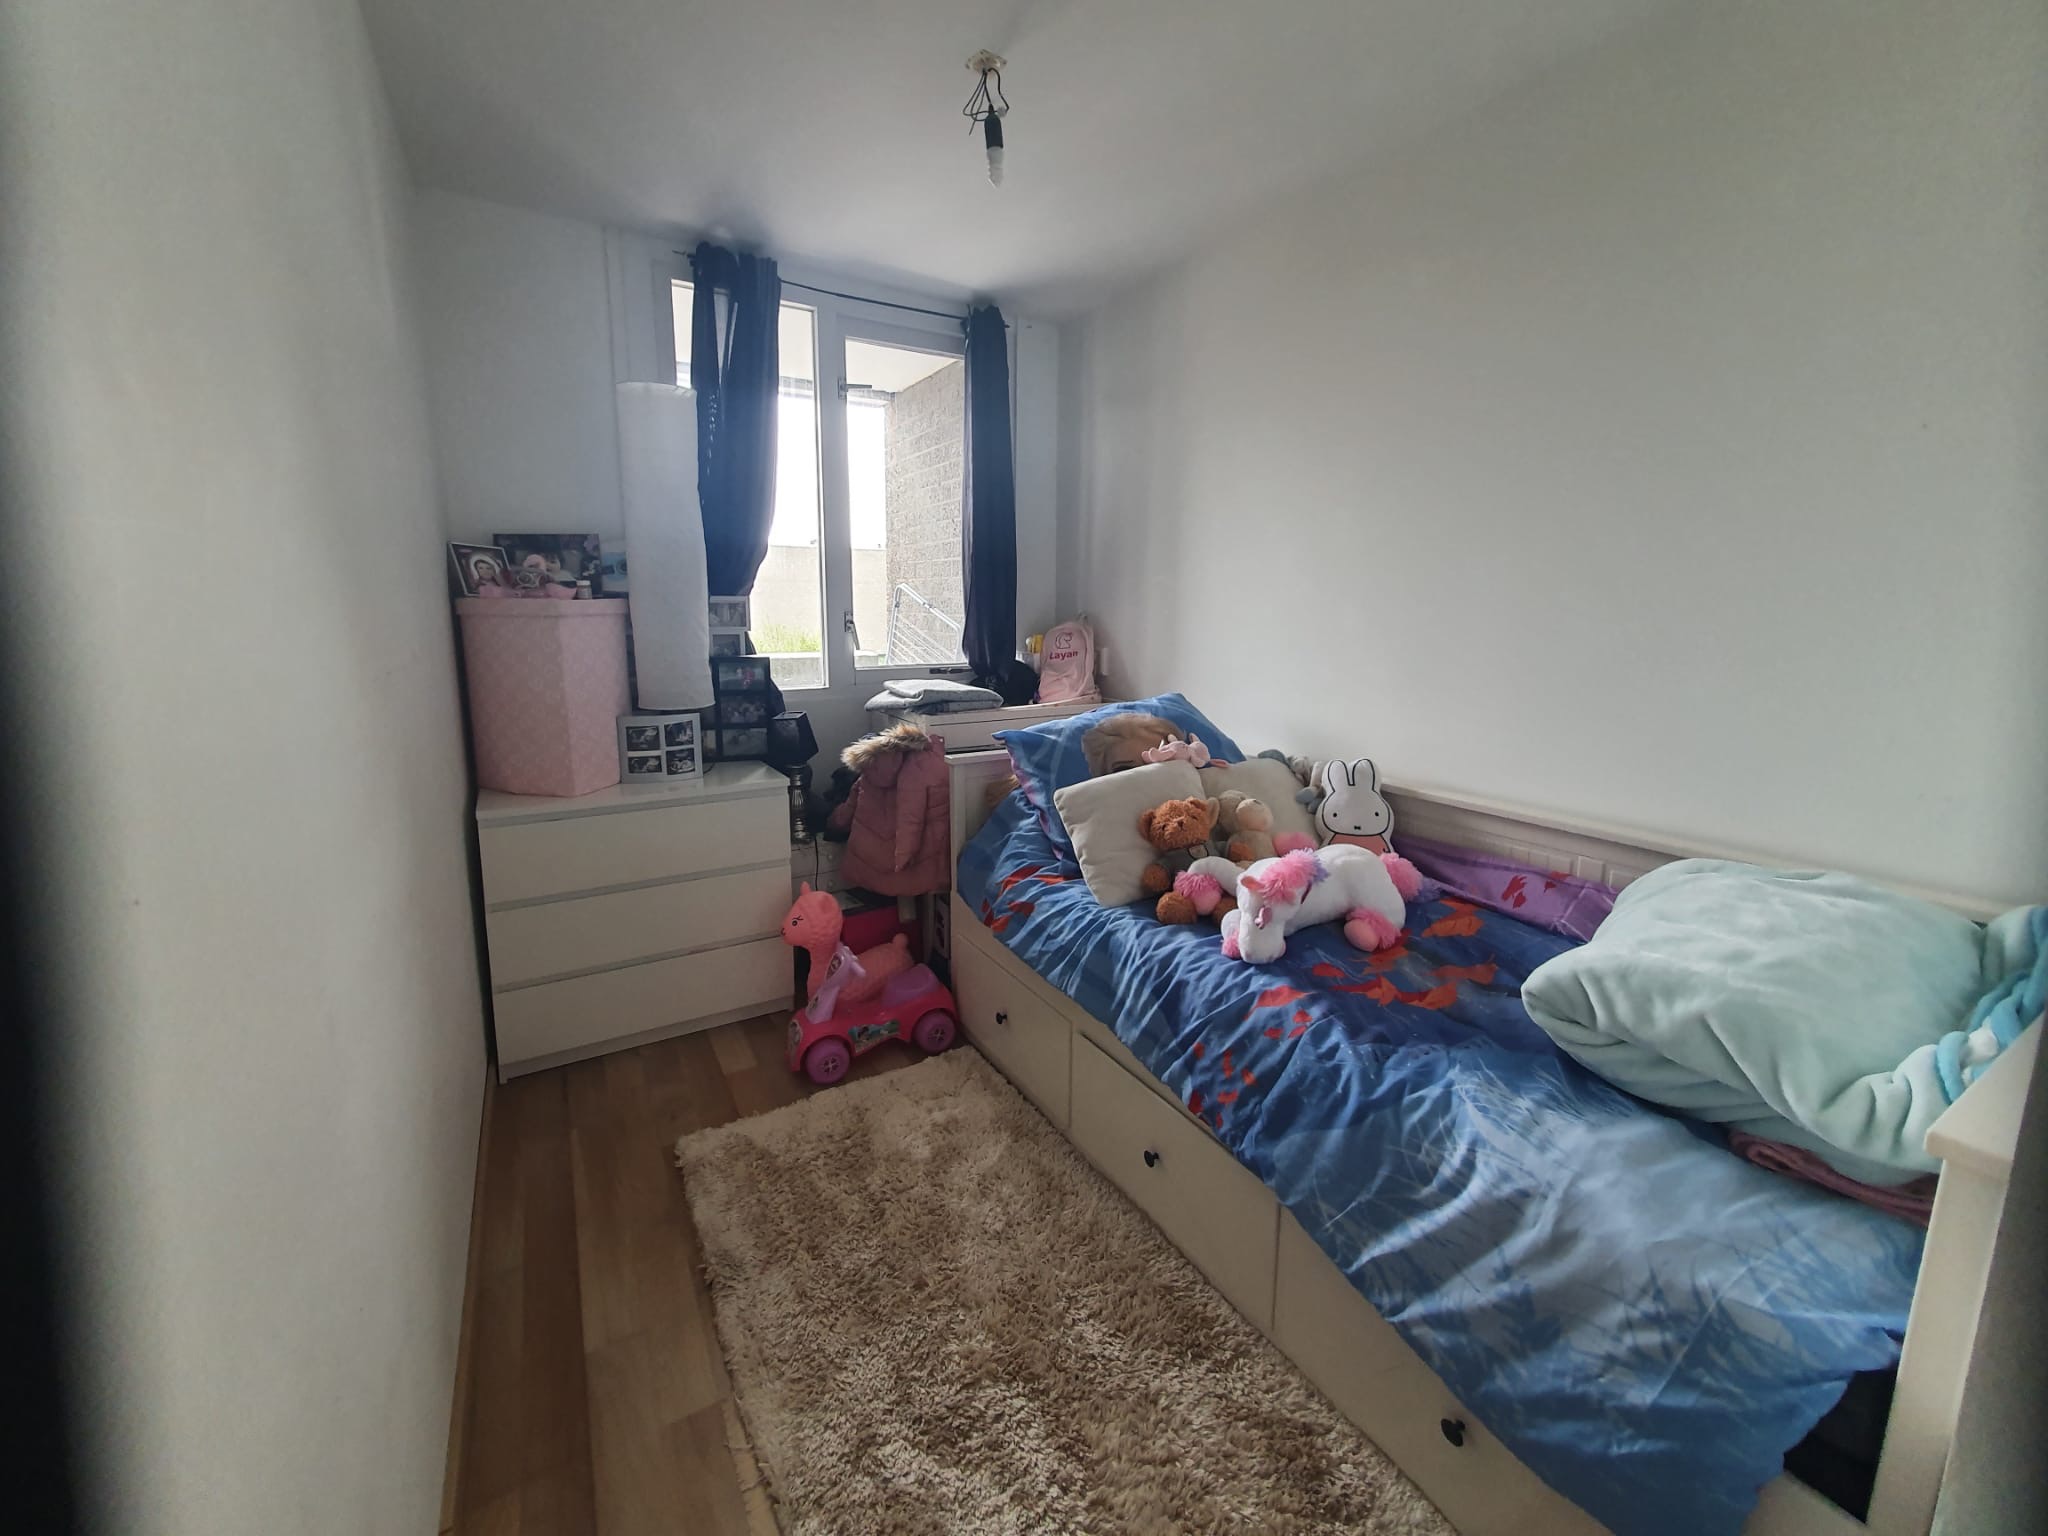 Woning / appartement - Lelystad - Kempenaar 11 51